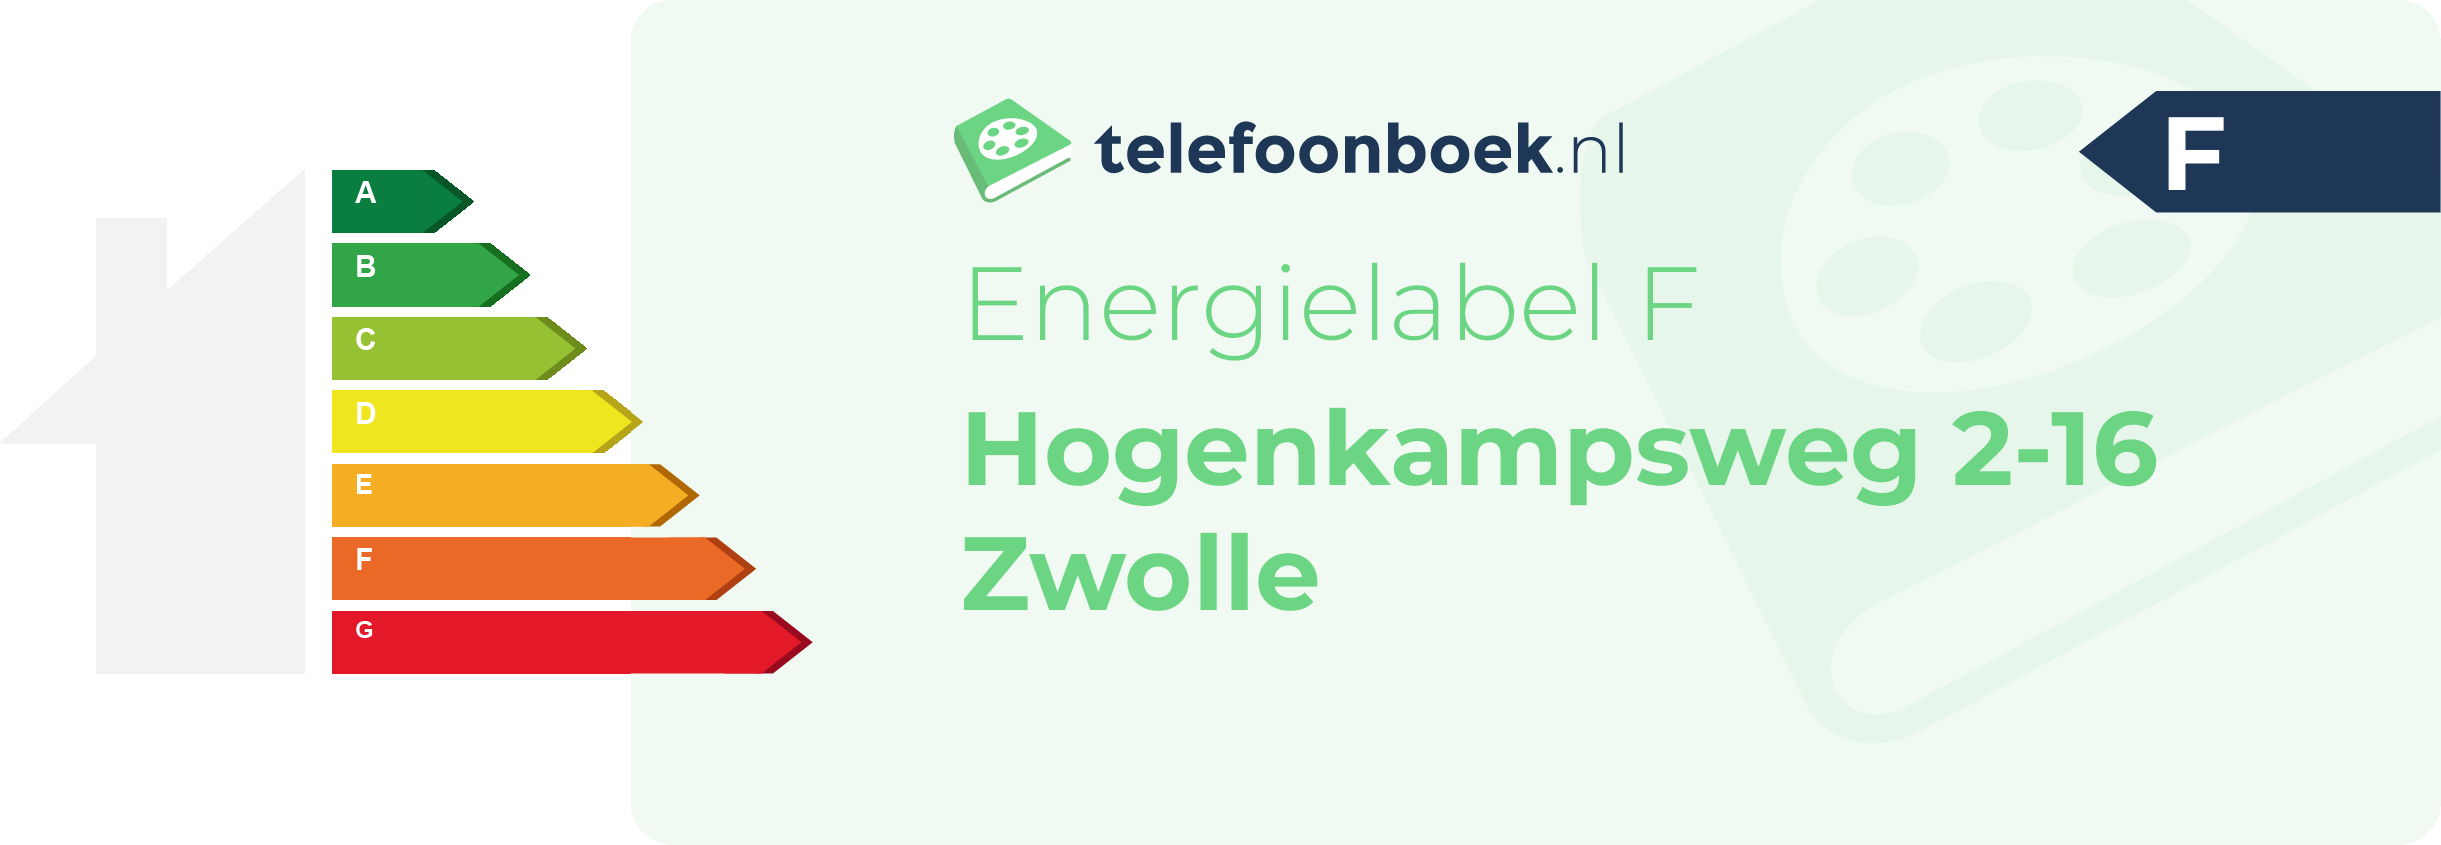 Energielabel Hogenkampsweg 2-16 Zwolle